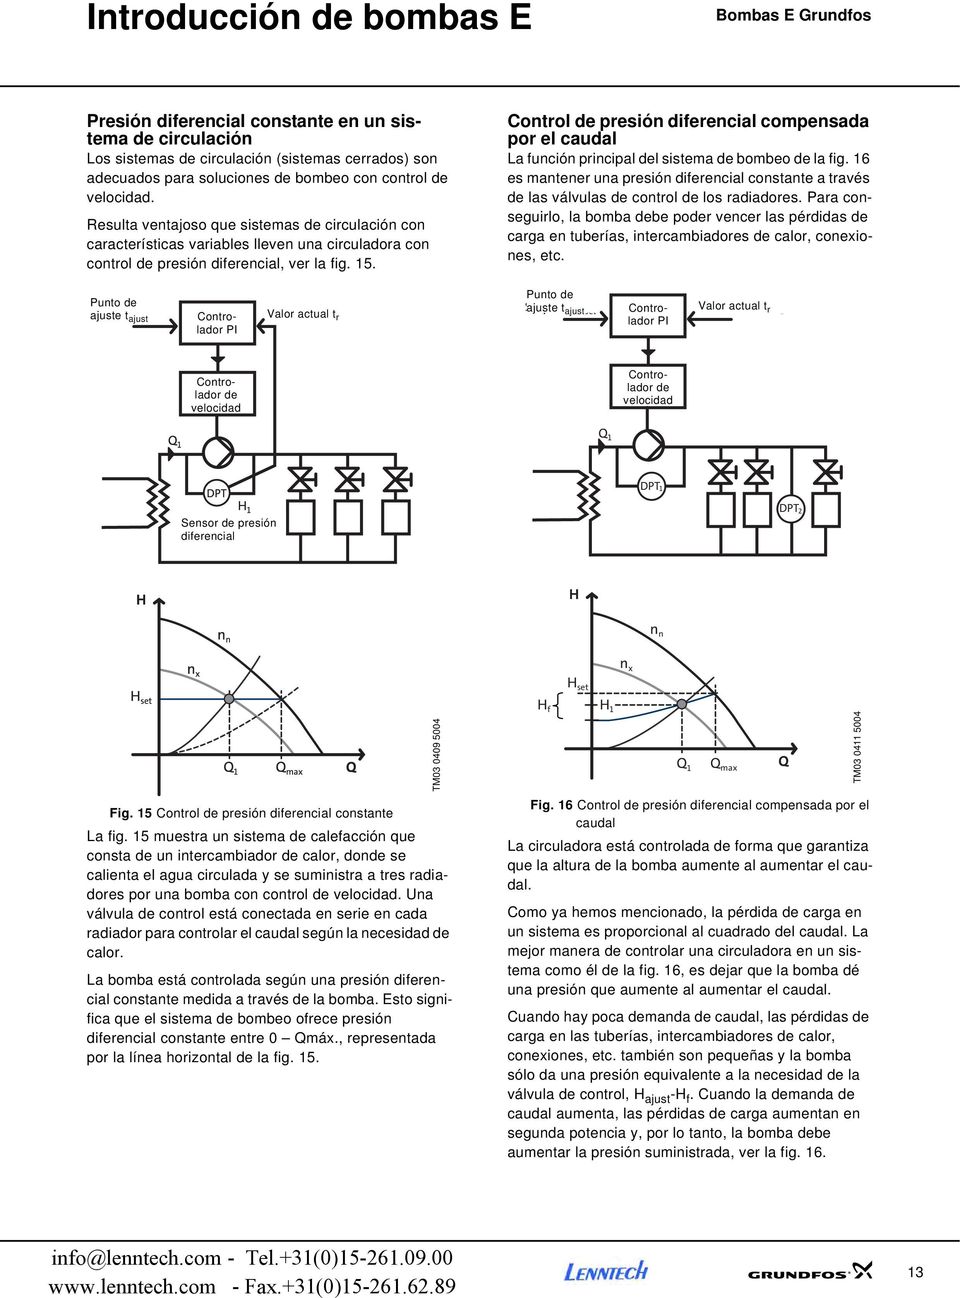 Control de presión diferencial compensada por el caudal La función principal del sistema de bombeo de la fig.